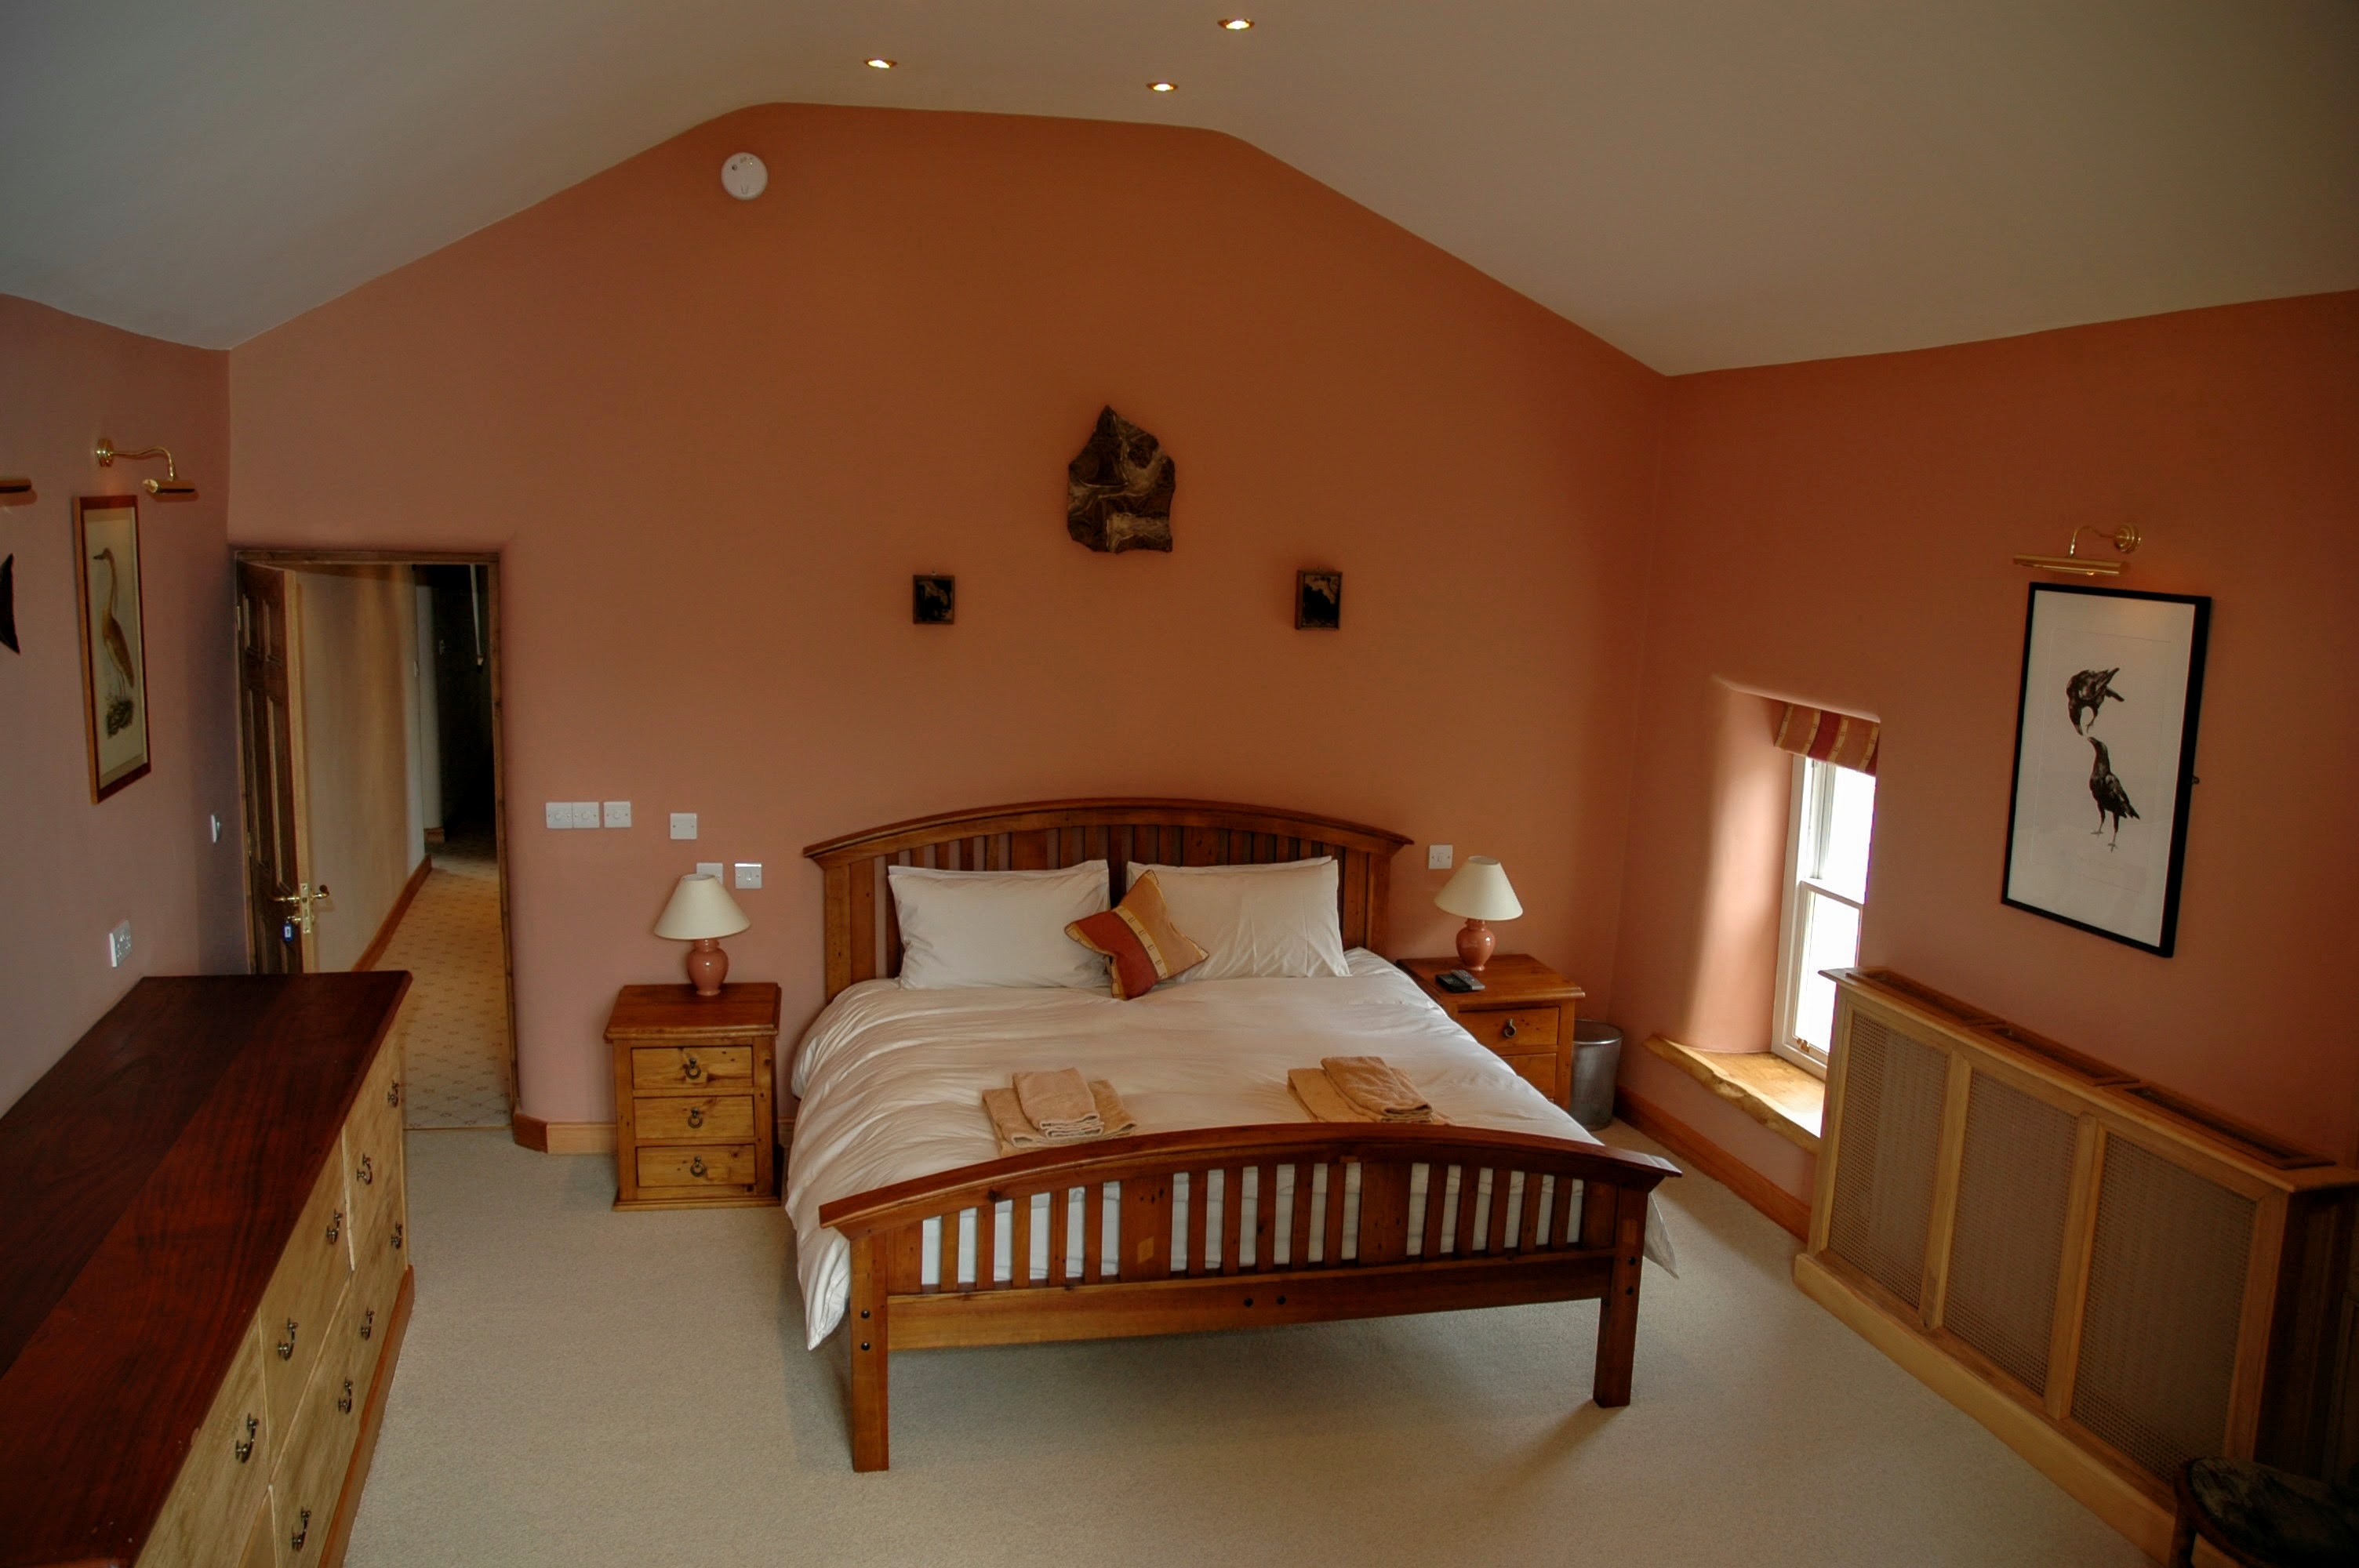 Large Master Bedroom With Balcony Yew Tree Farm Reagill